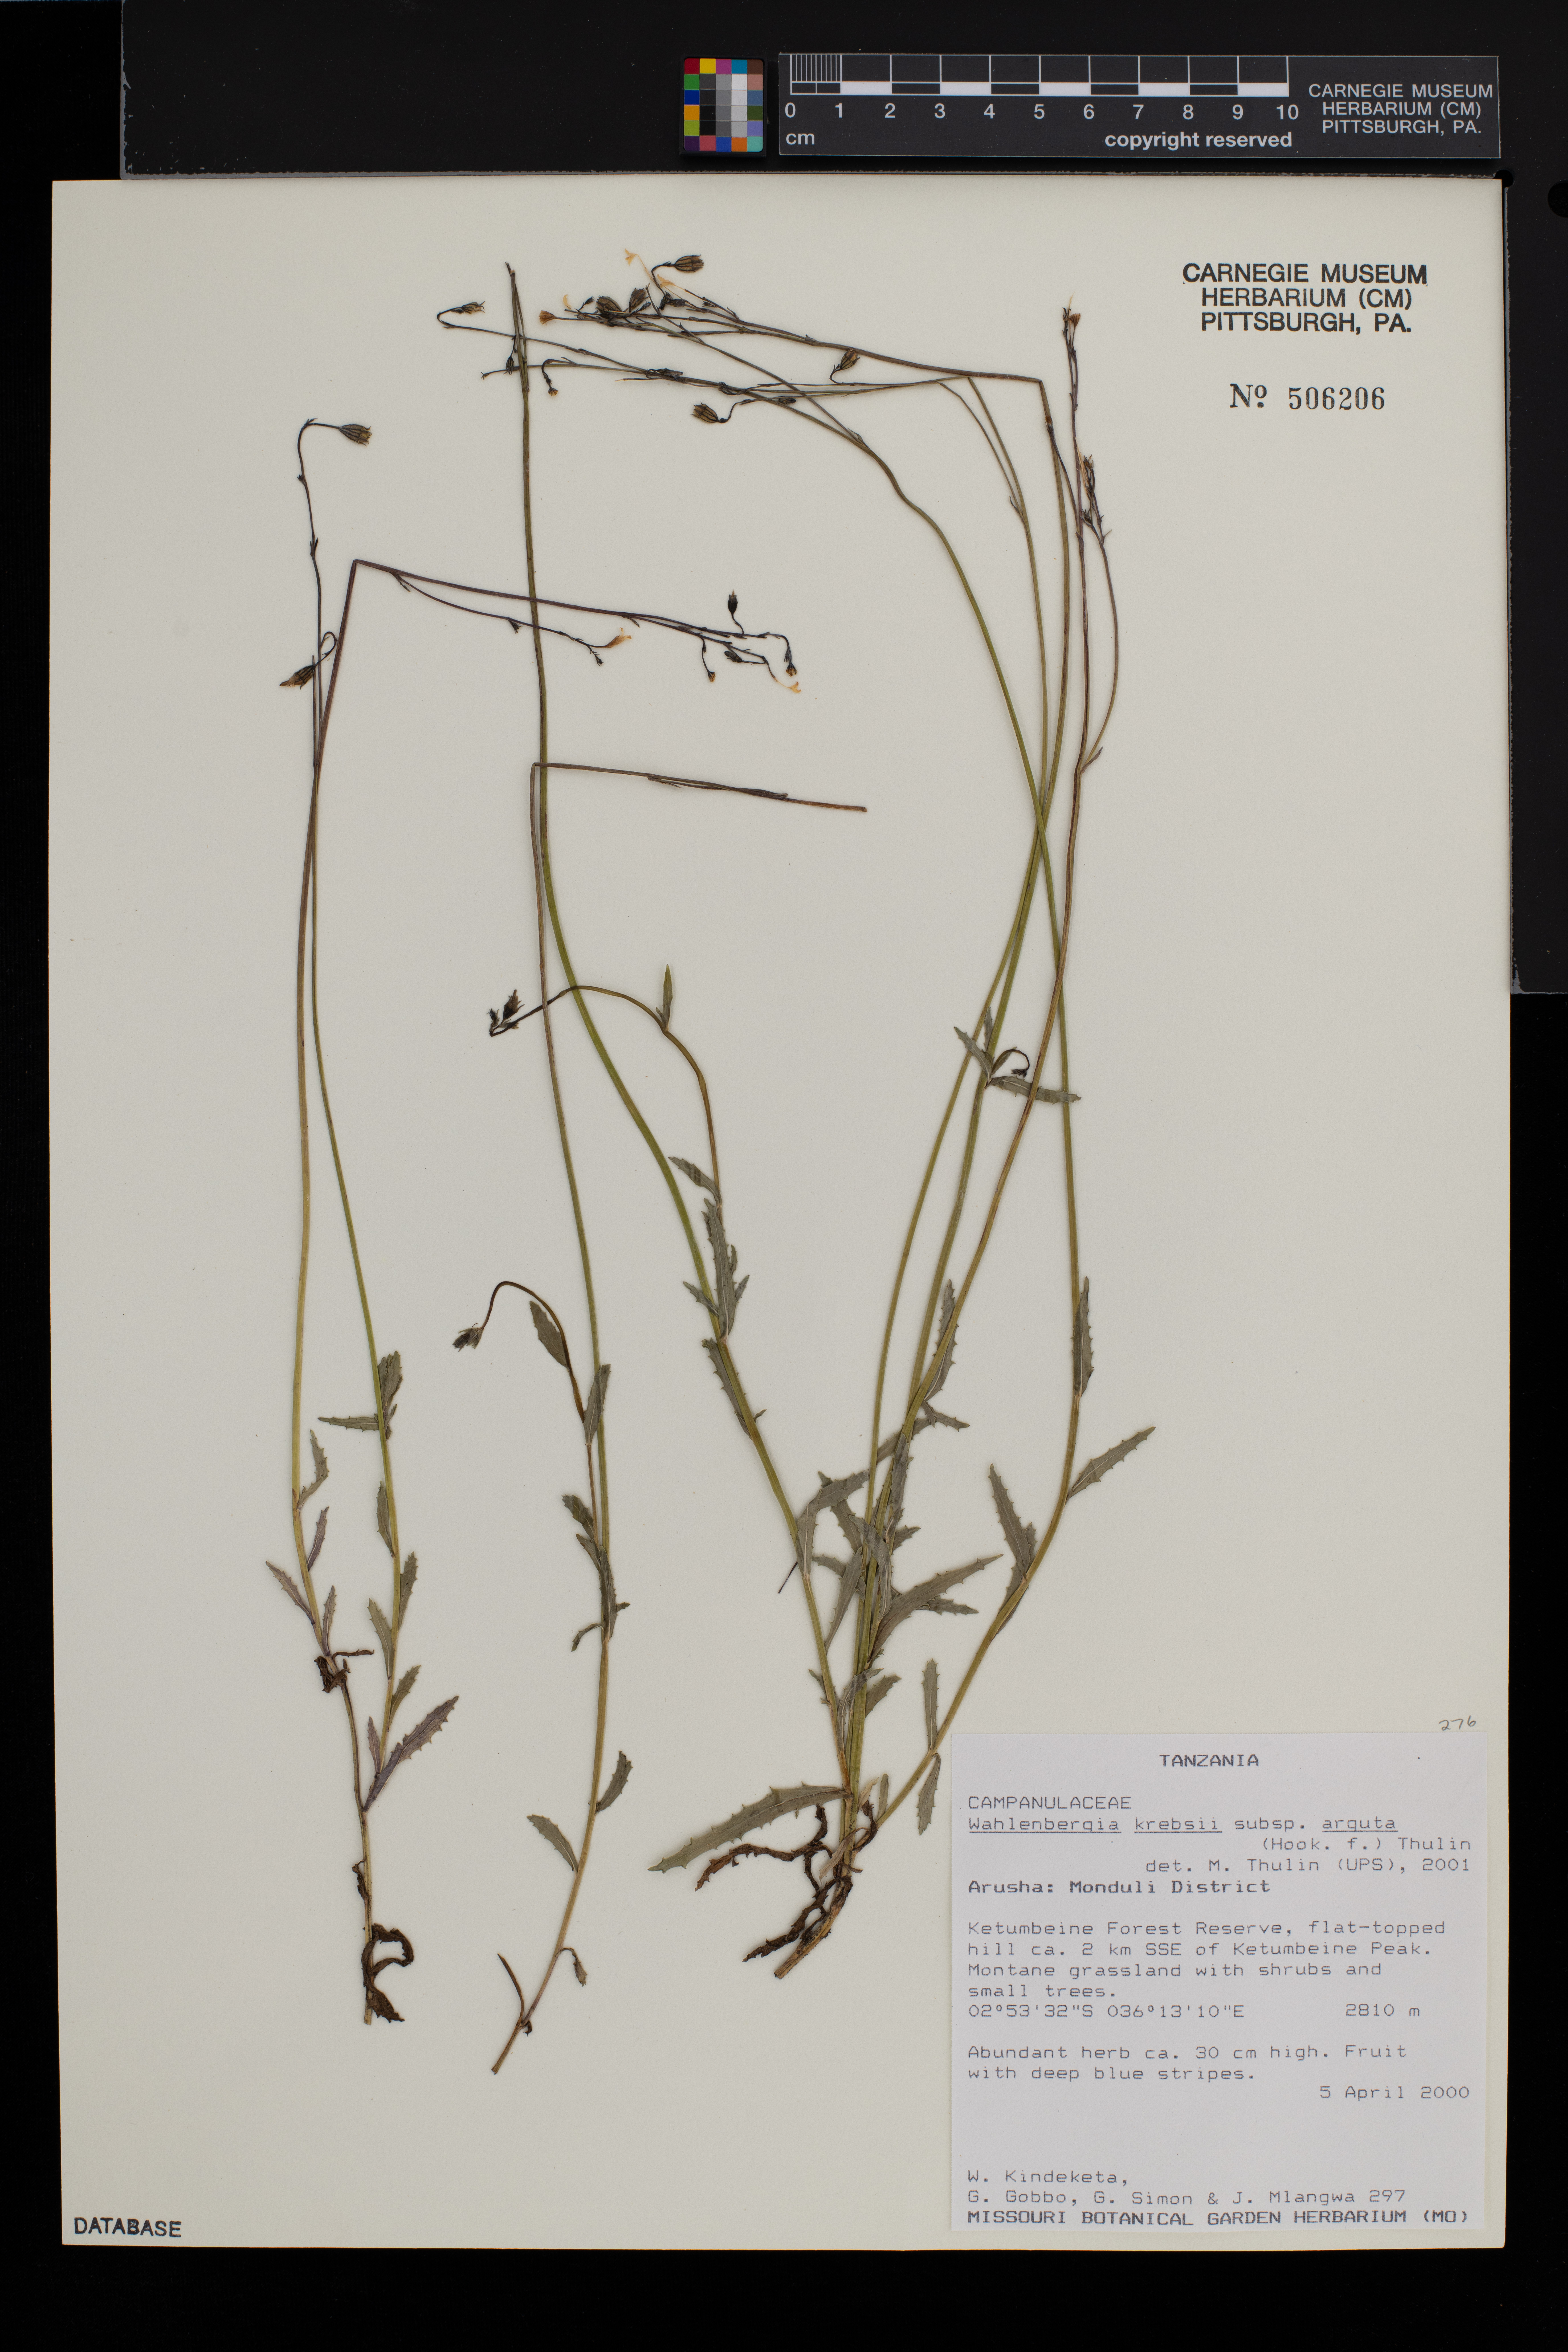 Wahlenbergia krebsii subsp. arguta image